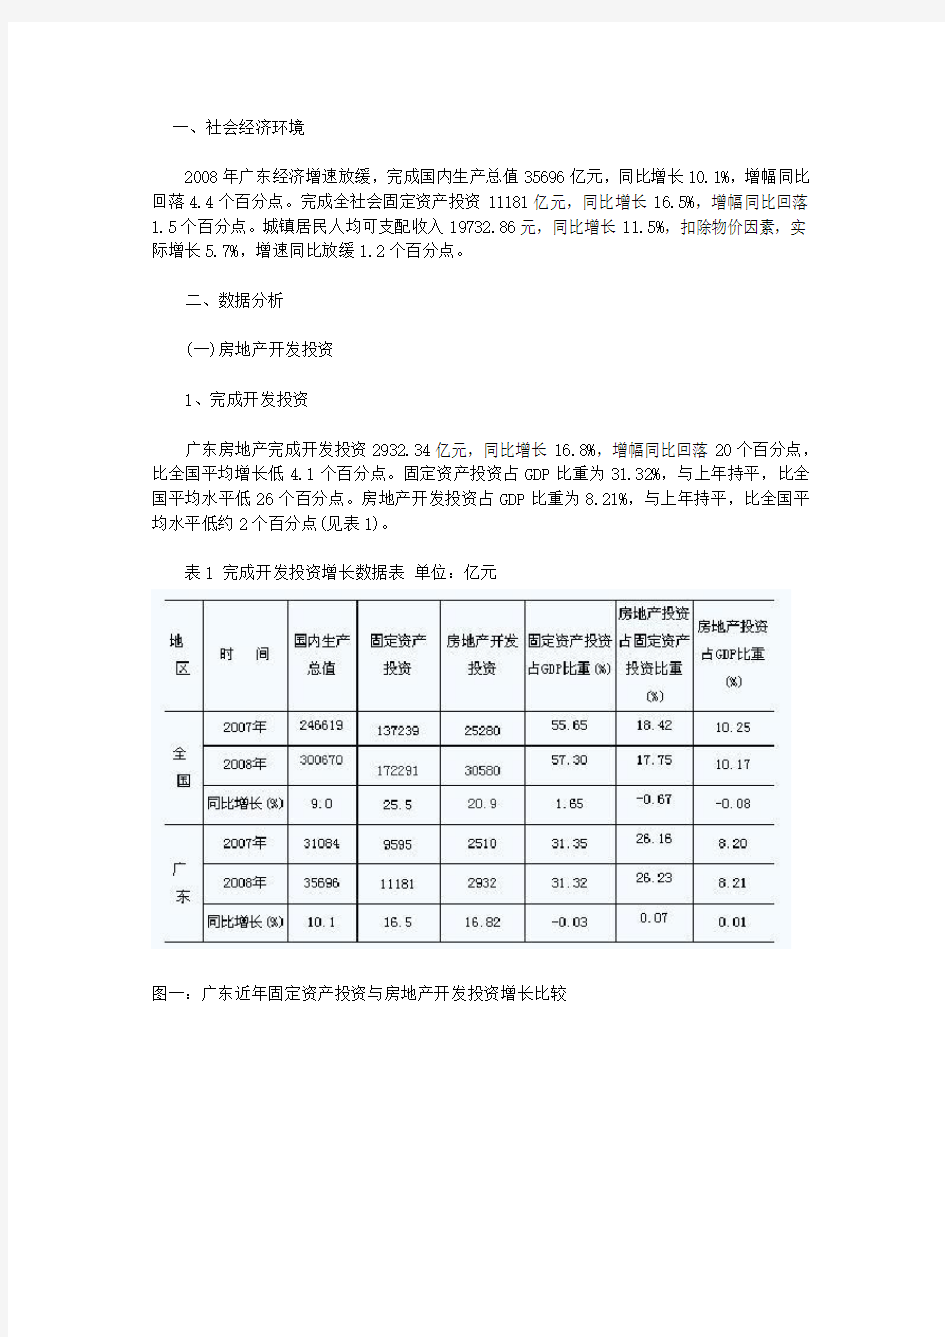 广东房地产市场分析报告1171556202